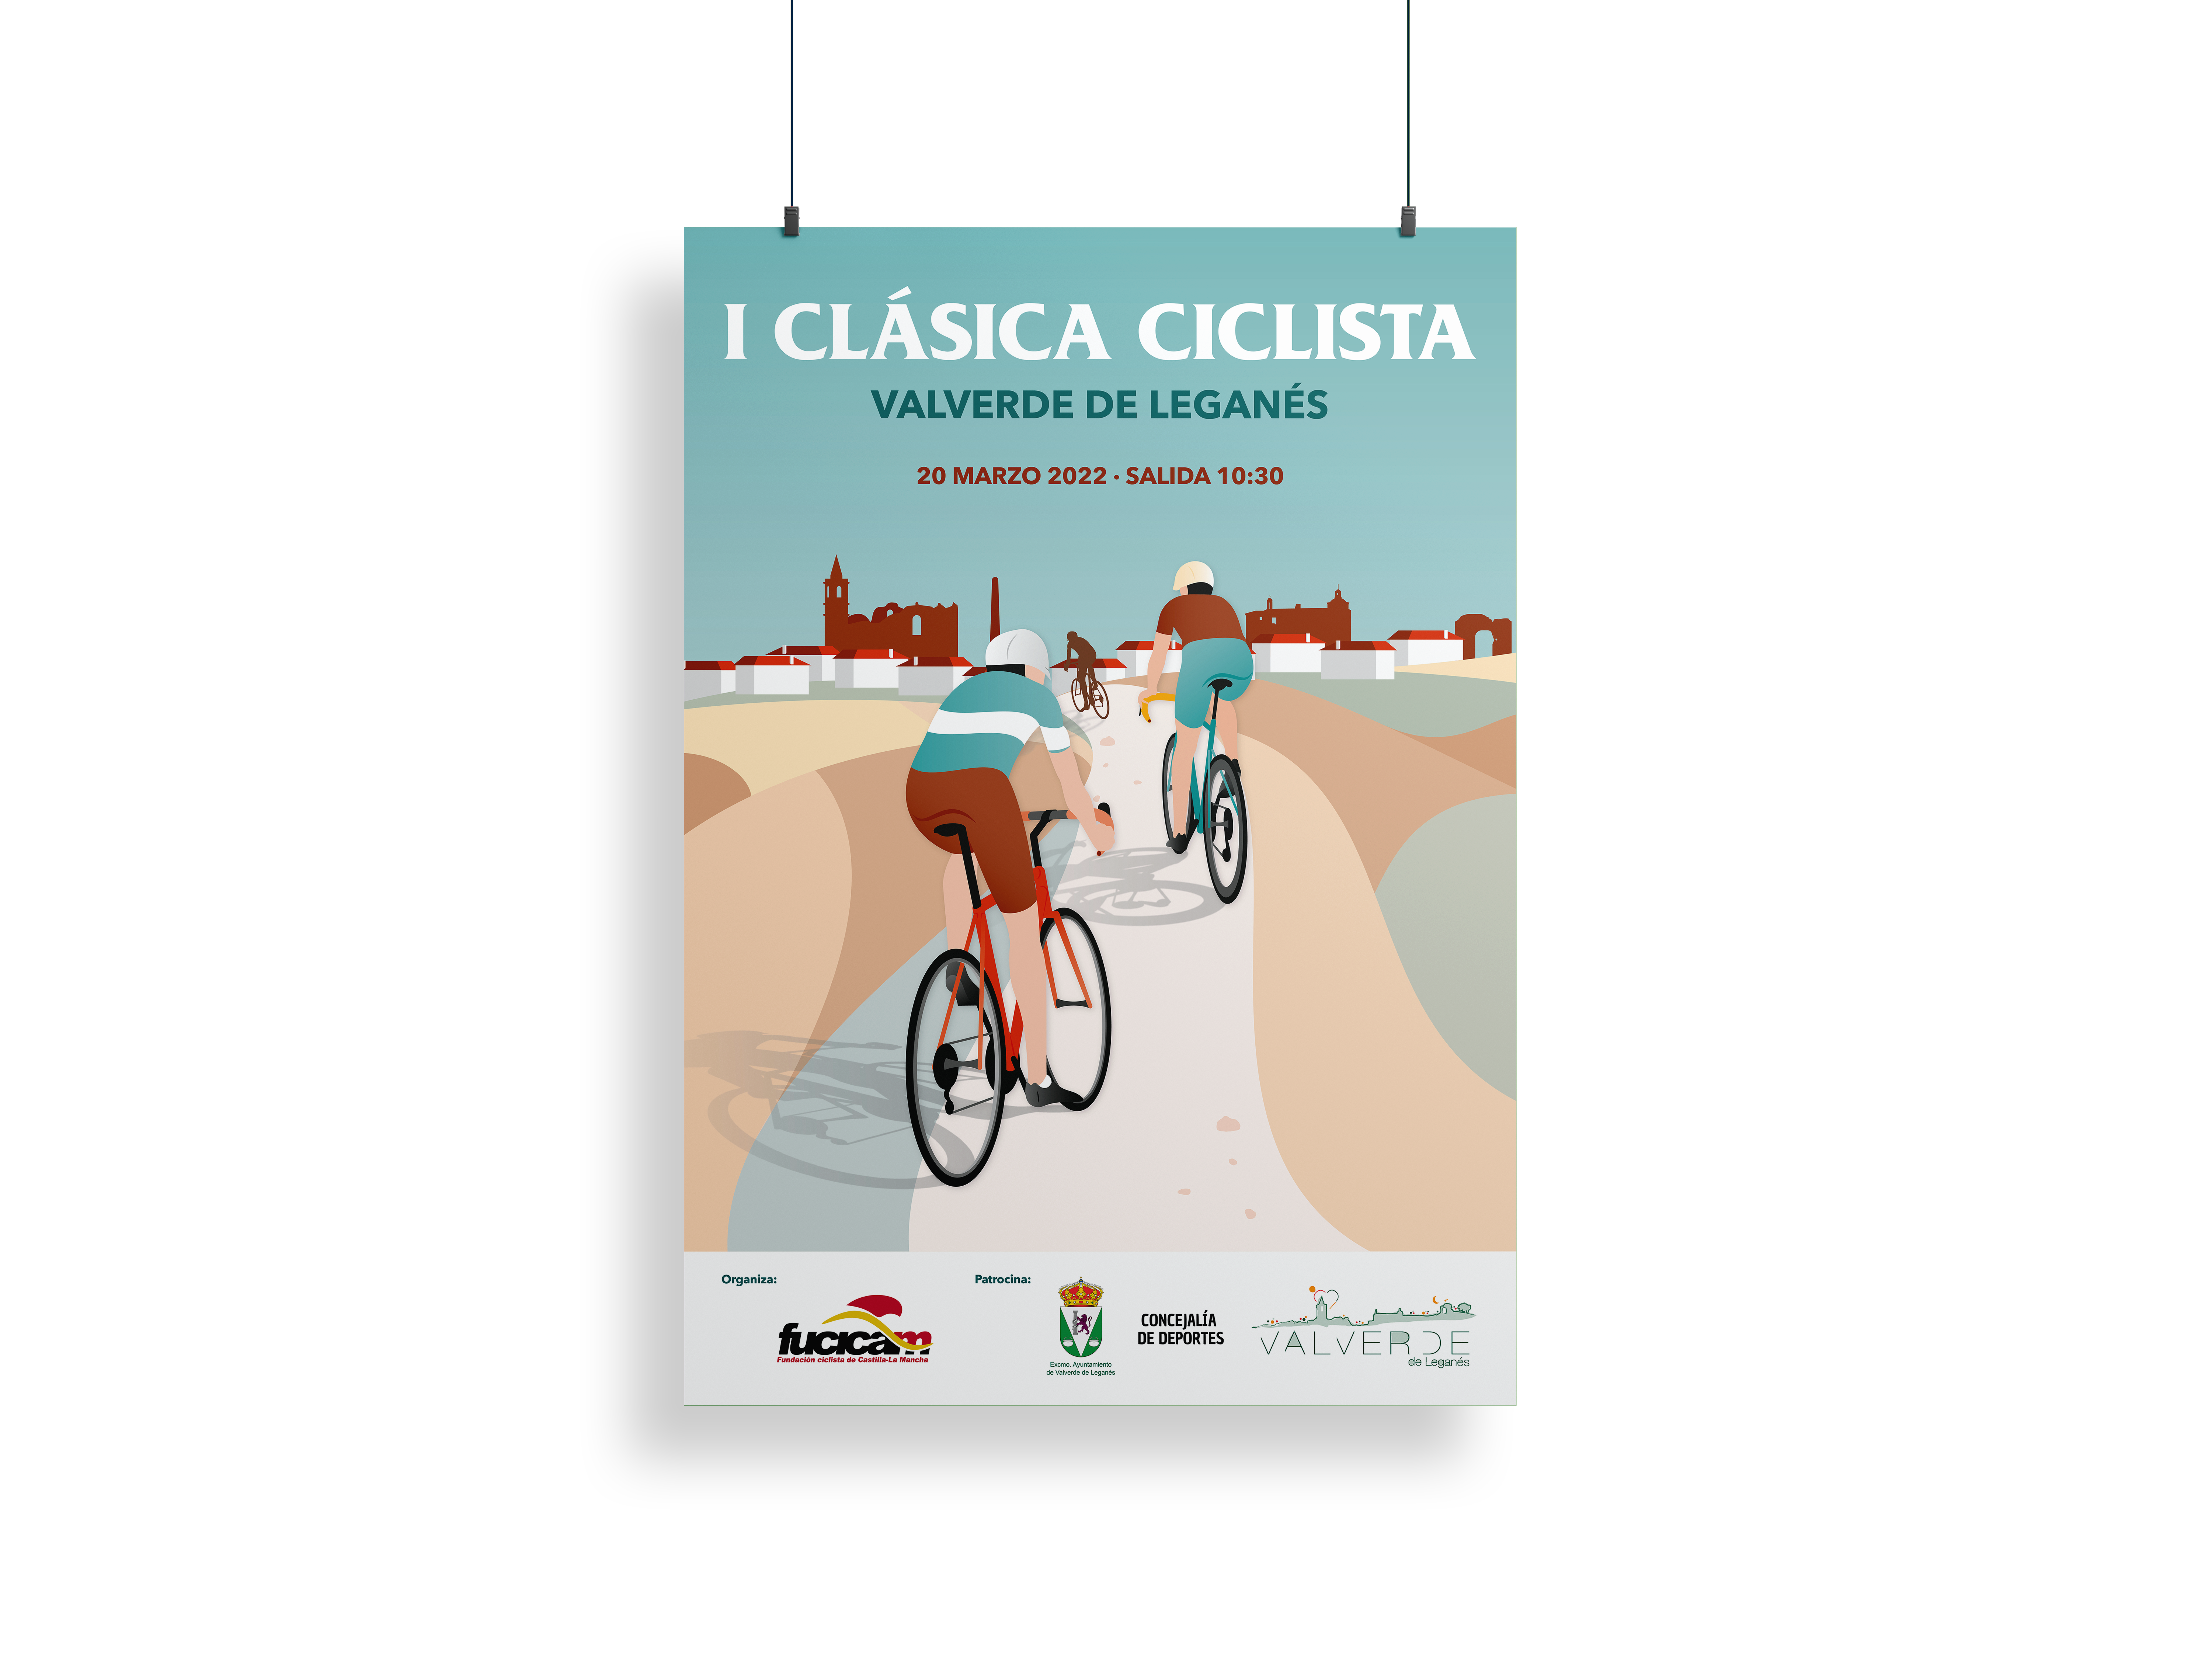 I Clasica ciclista Valverde de Leganes 2022